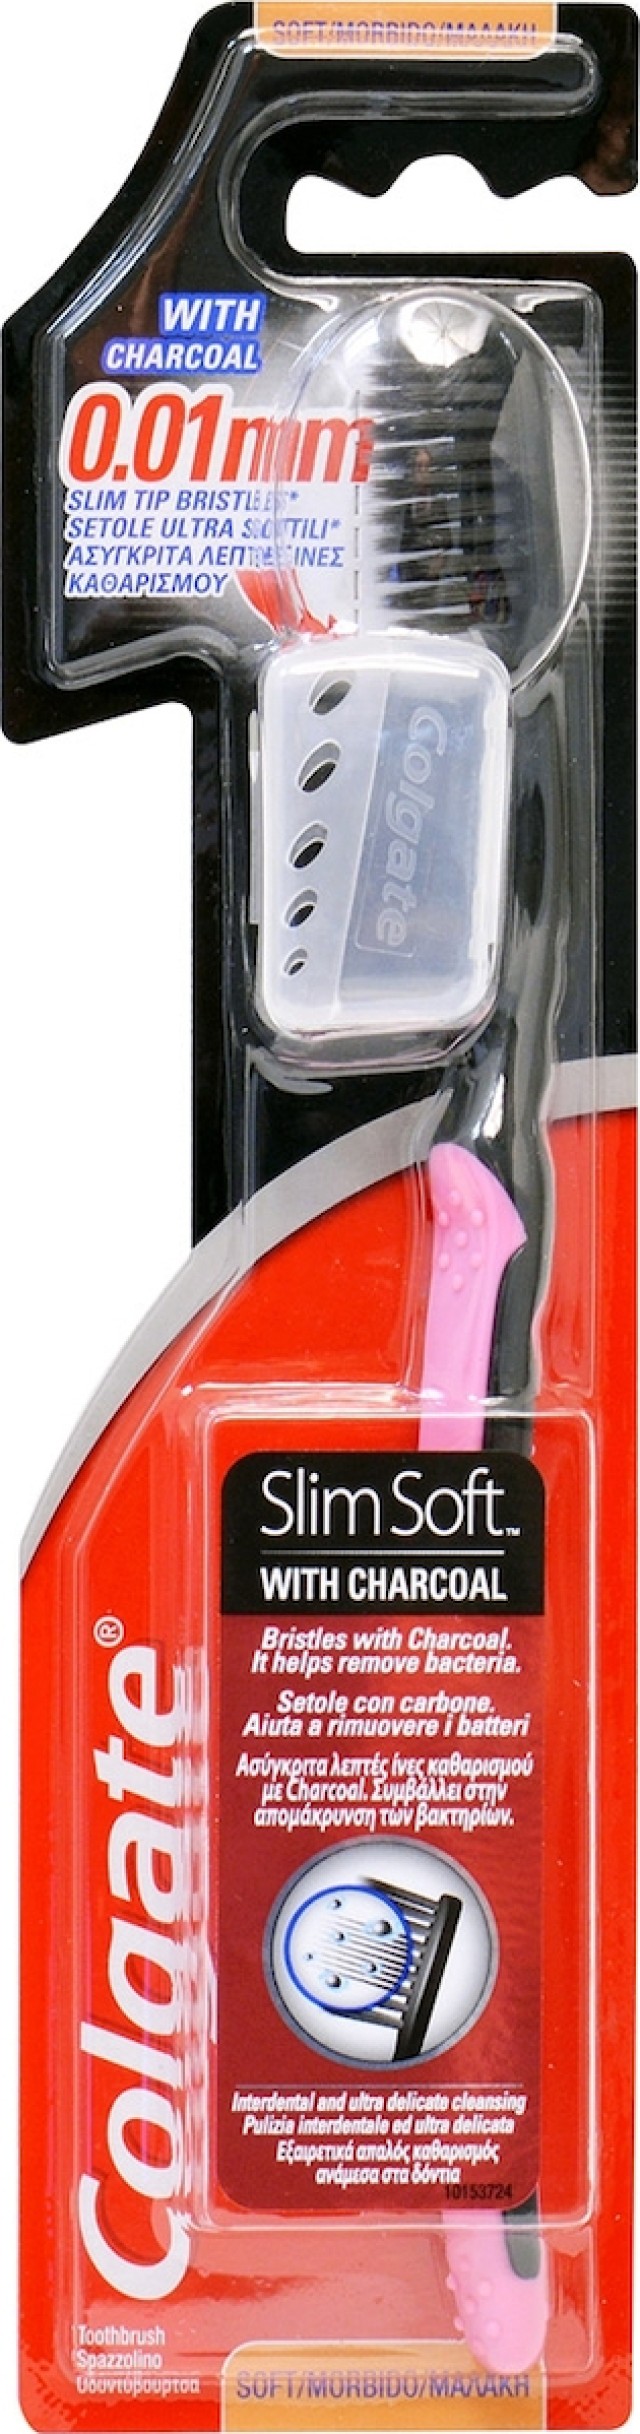 Colgate Οδοντόβουρτσα Slim Soft Charcoal Χρώμα Μαύρο-Ροζ, 1τμχ